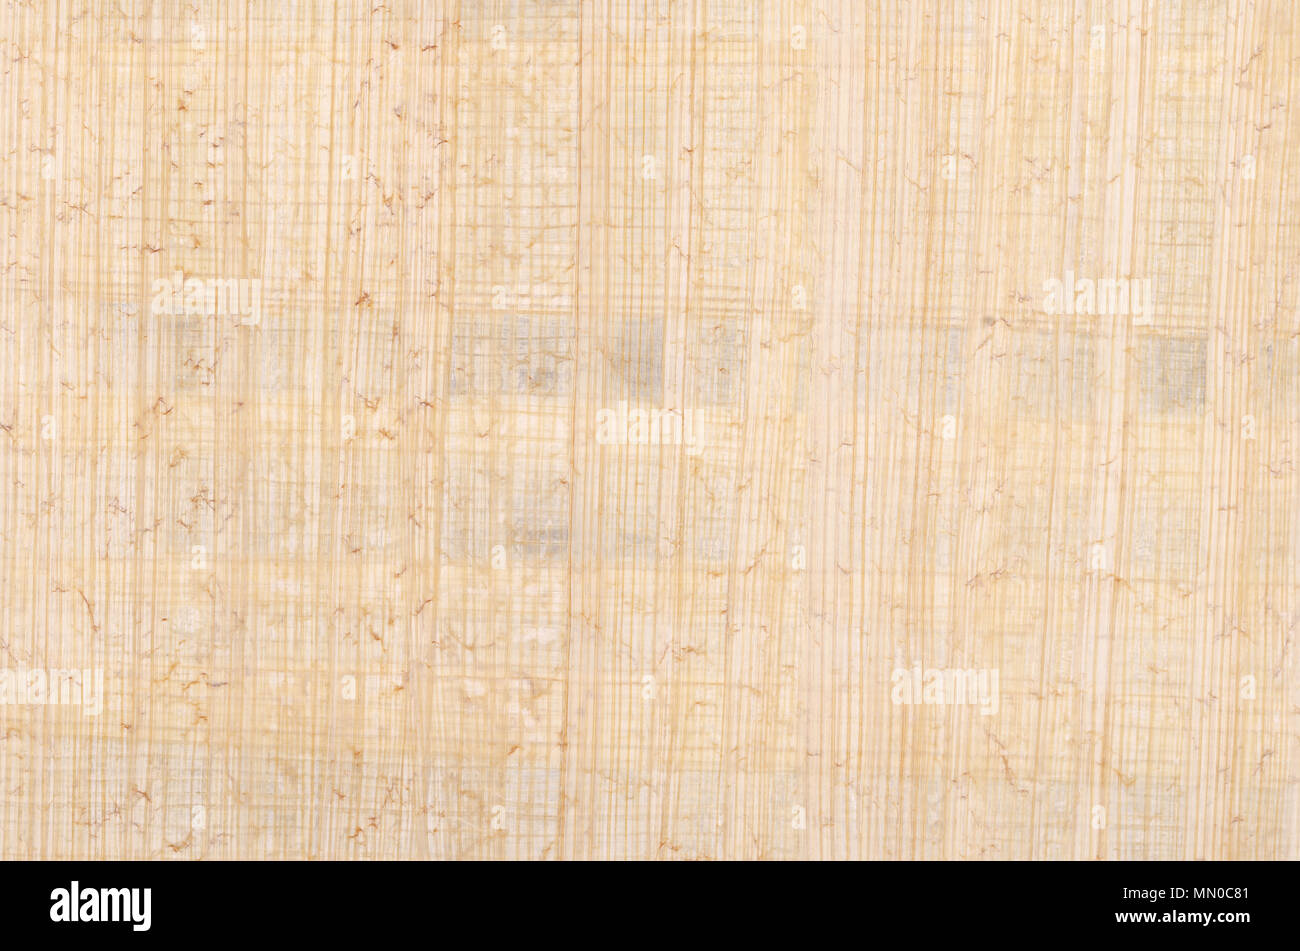 Surface de papyrus. Matériau semblable à du papier épais, utilisé dans les temps anciens, comme une plage d'écriture. Faites de la moelle de l'usine de papyrus, Cyperus papyrus. Banque D'Images